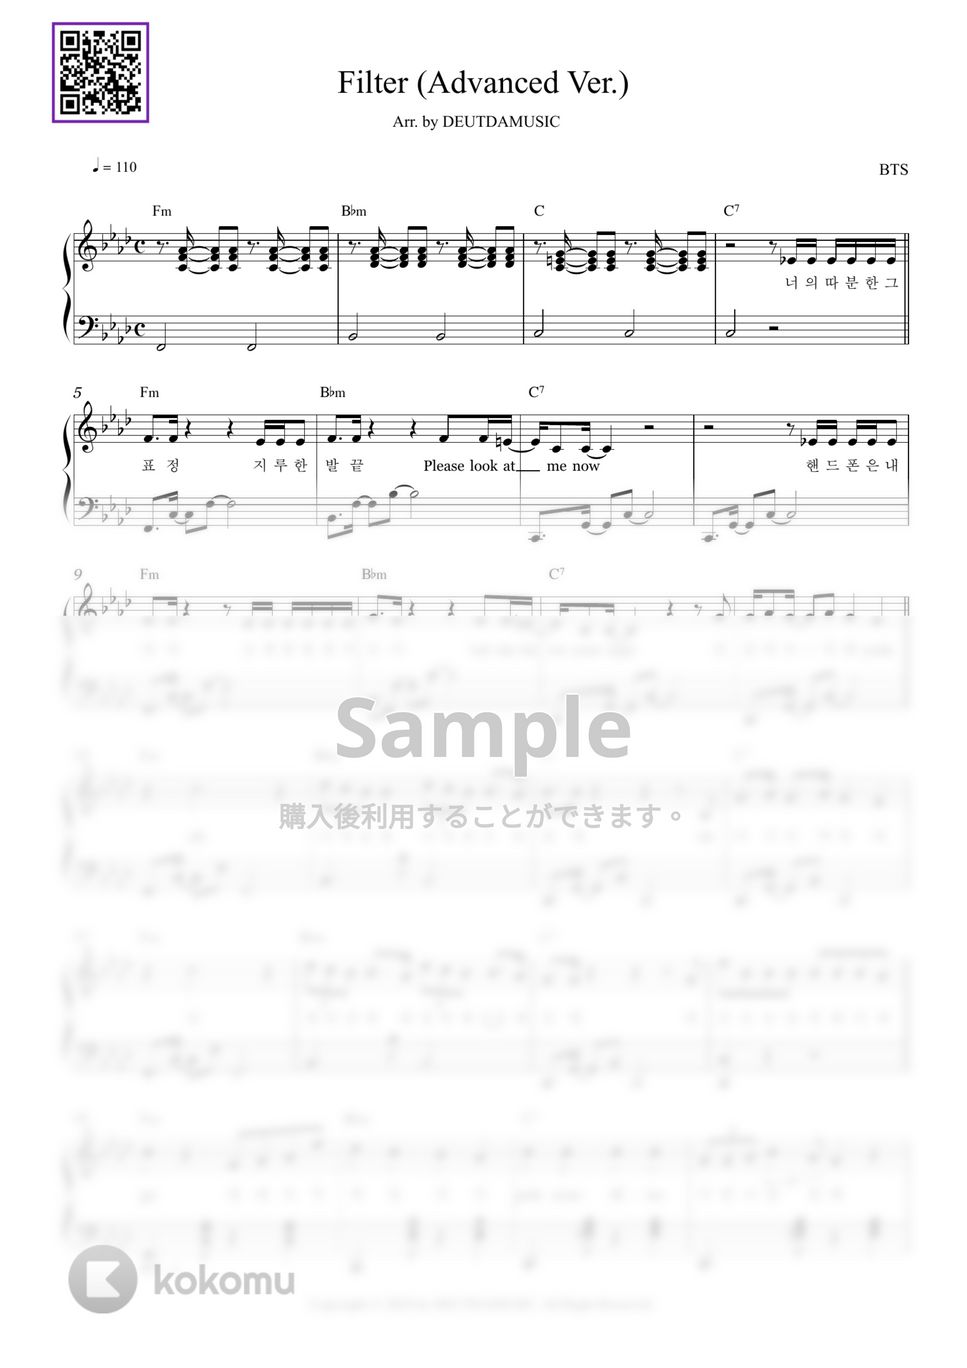 防弾少年団(BTS) - Filter (中級バージョン) by DEUTDAMUSIC